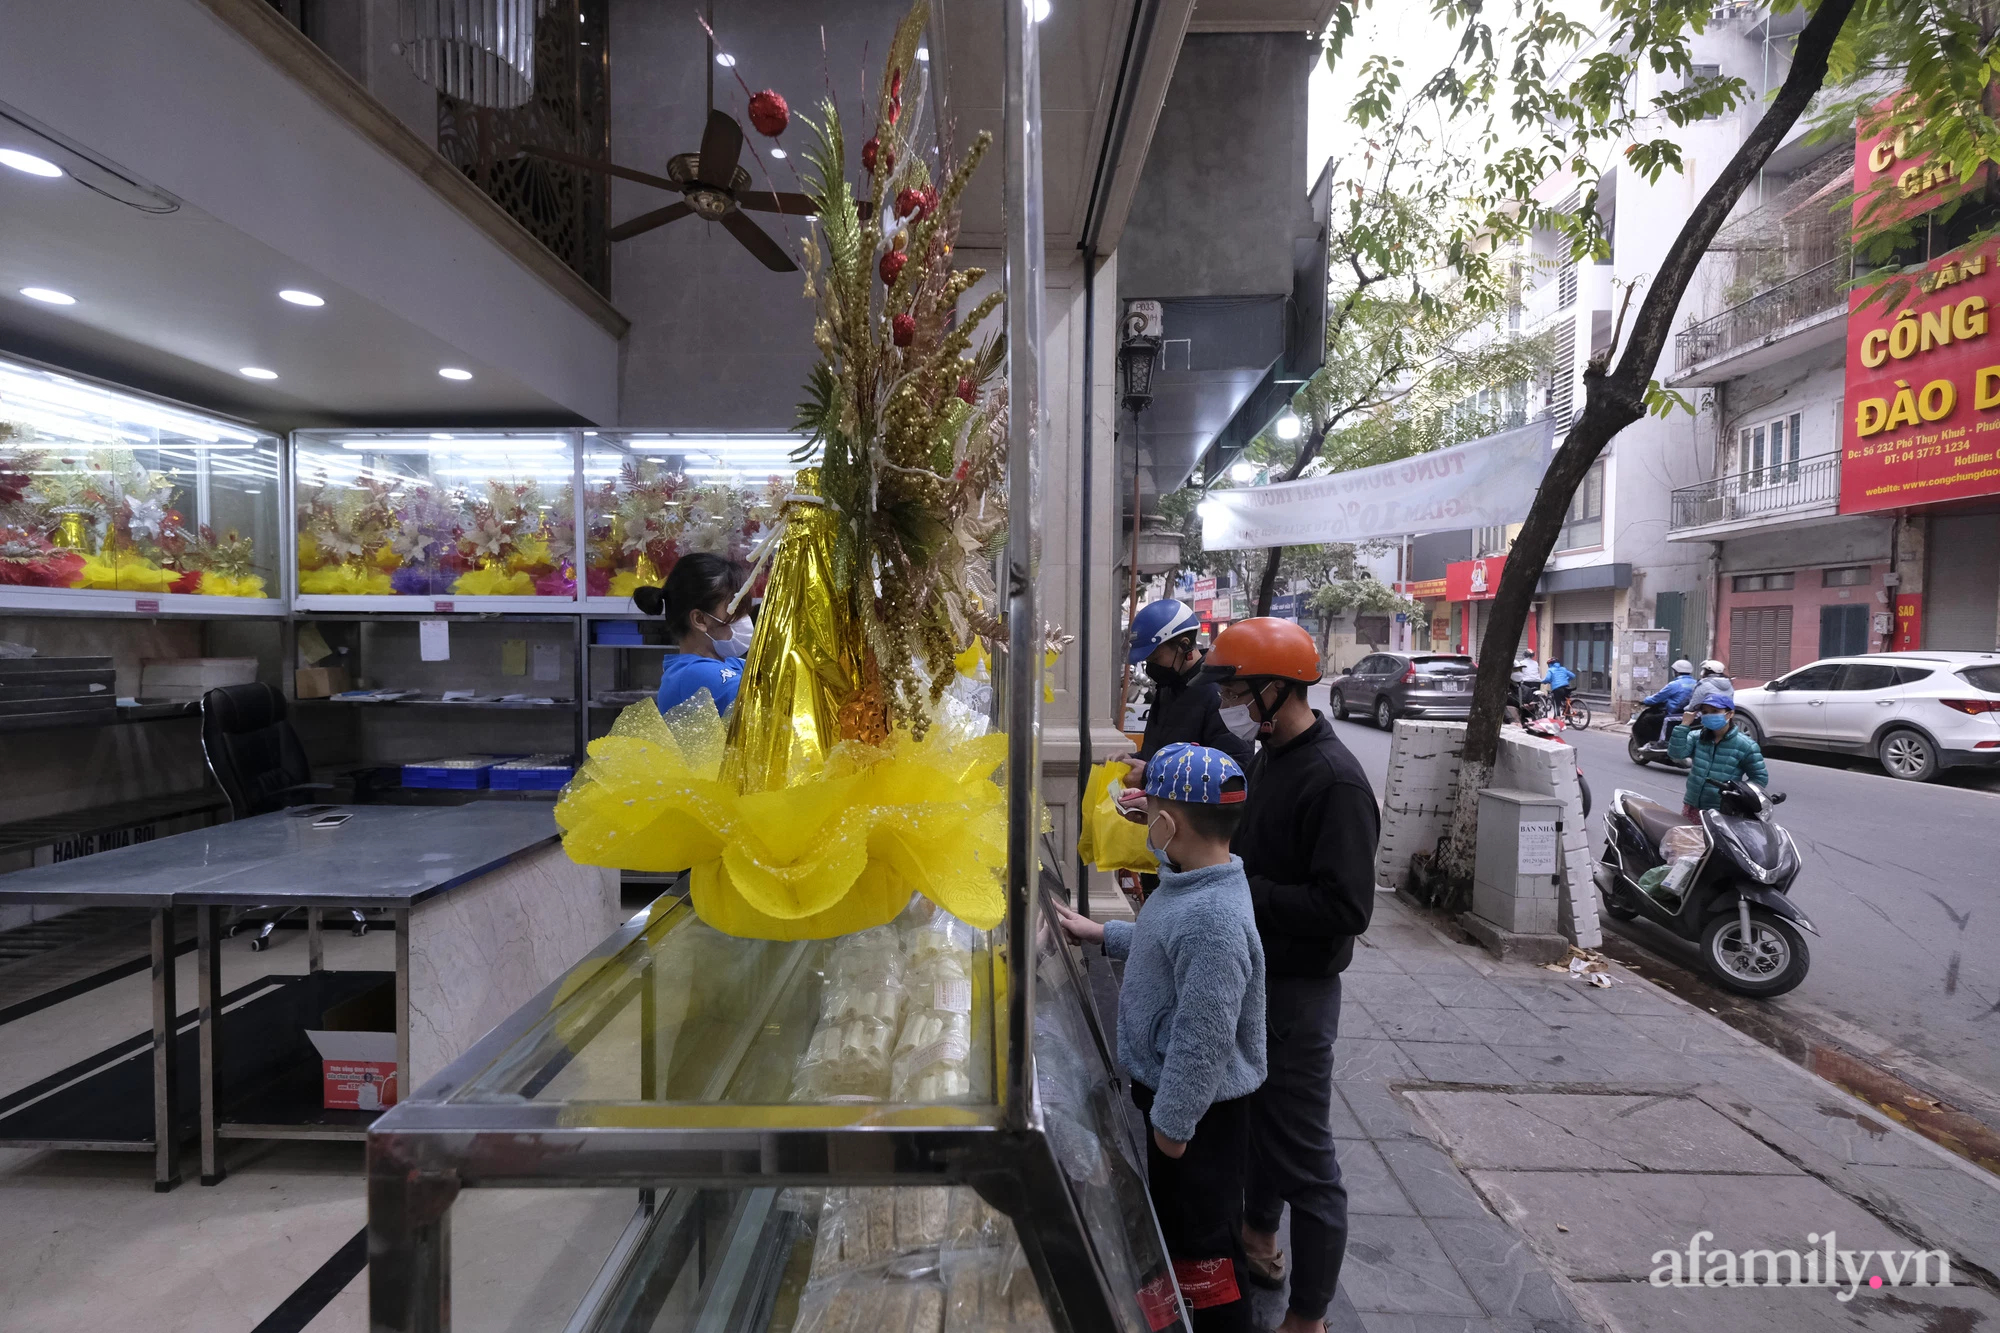 Hà Nội đến lúc nên dừng việc cấm hoạt động bán ăn uống tại chỗ tại quận, huyện "vùng cam" - Ảnh 4.